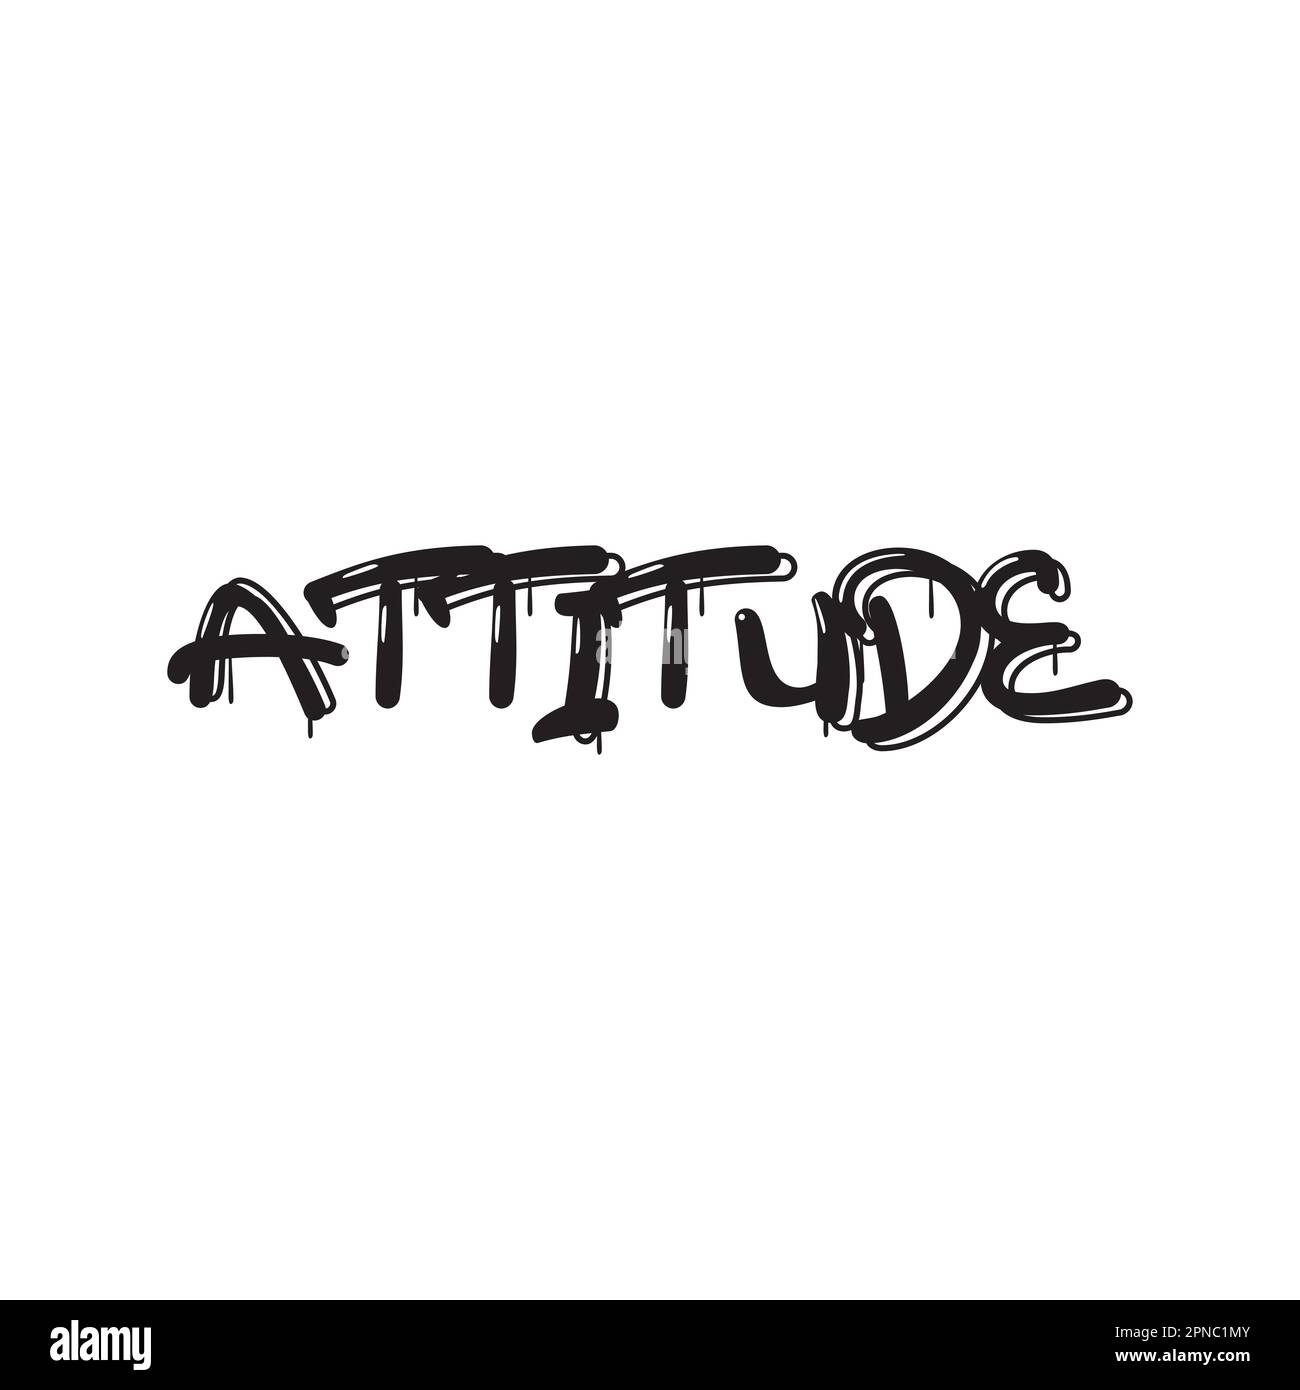 Attitude texte d'inspiration typographie t shirt design sur fond blanc Illustration de Vecteur